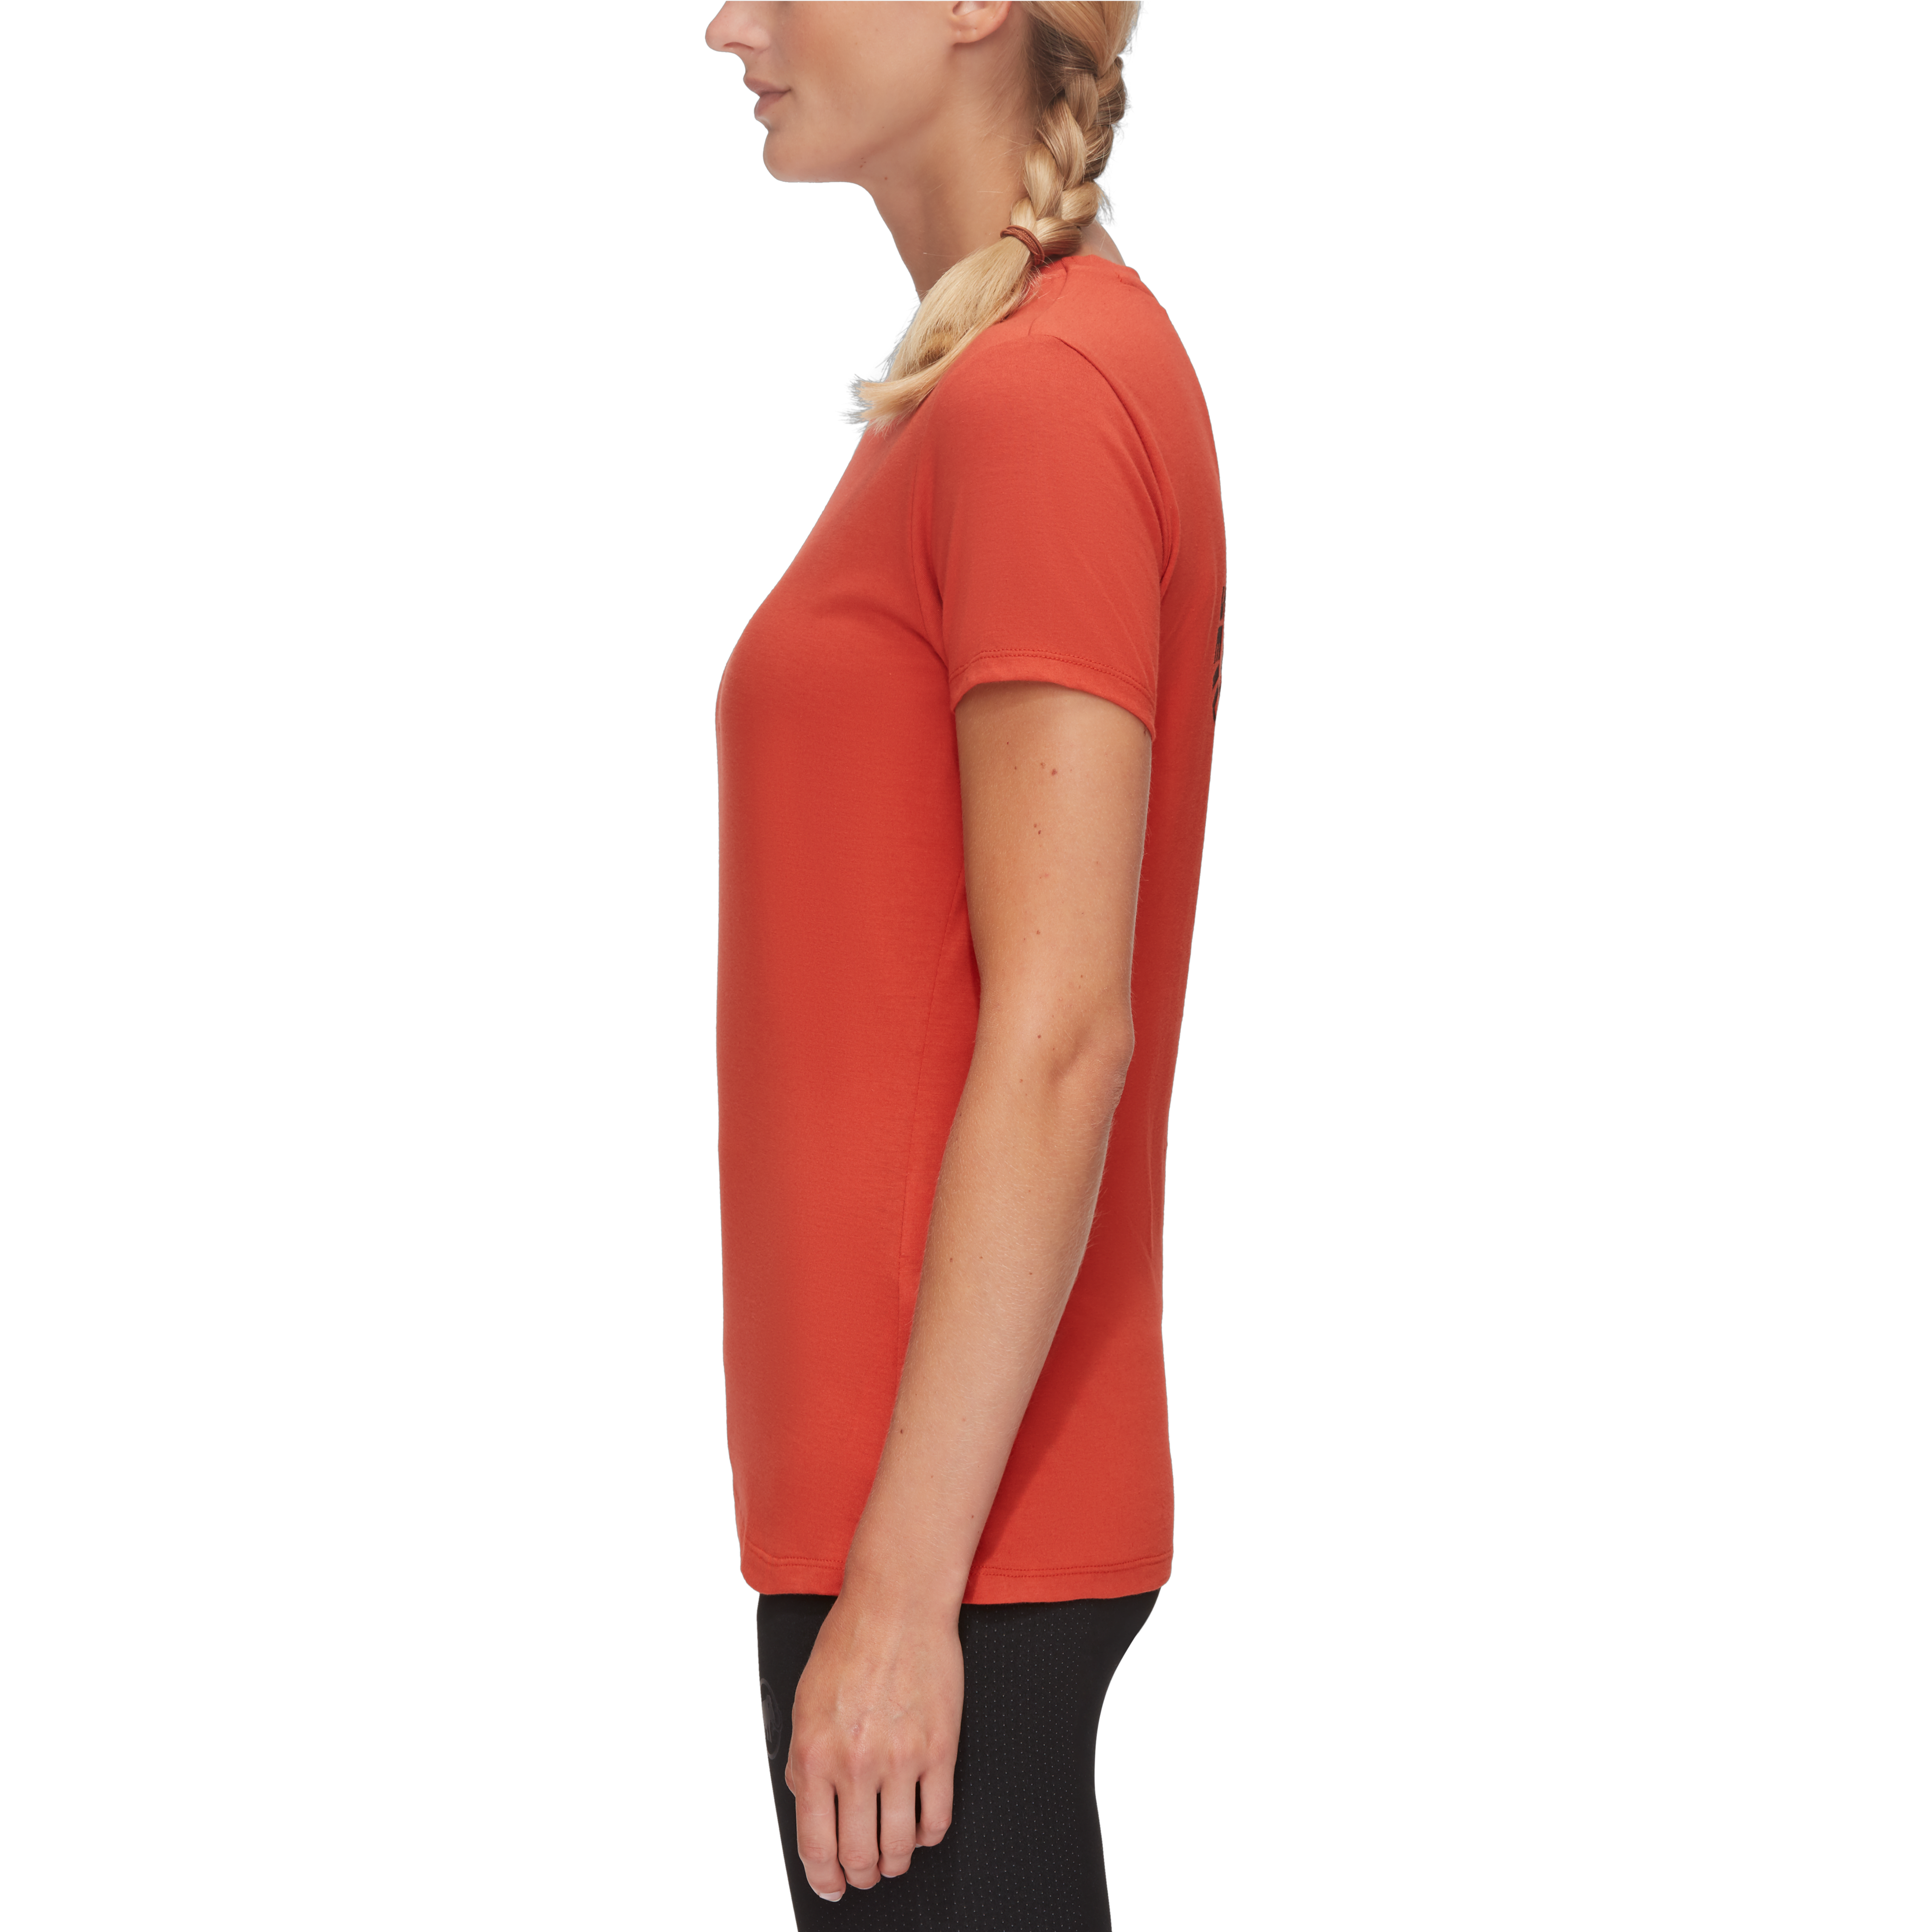 Seile T-Shirt Women Cordes product image